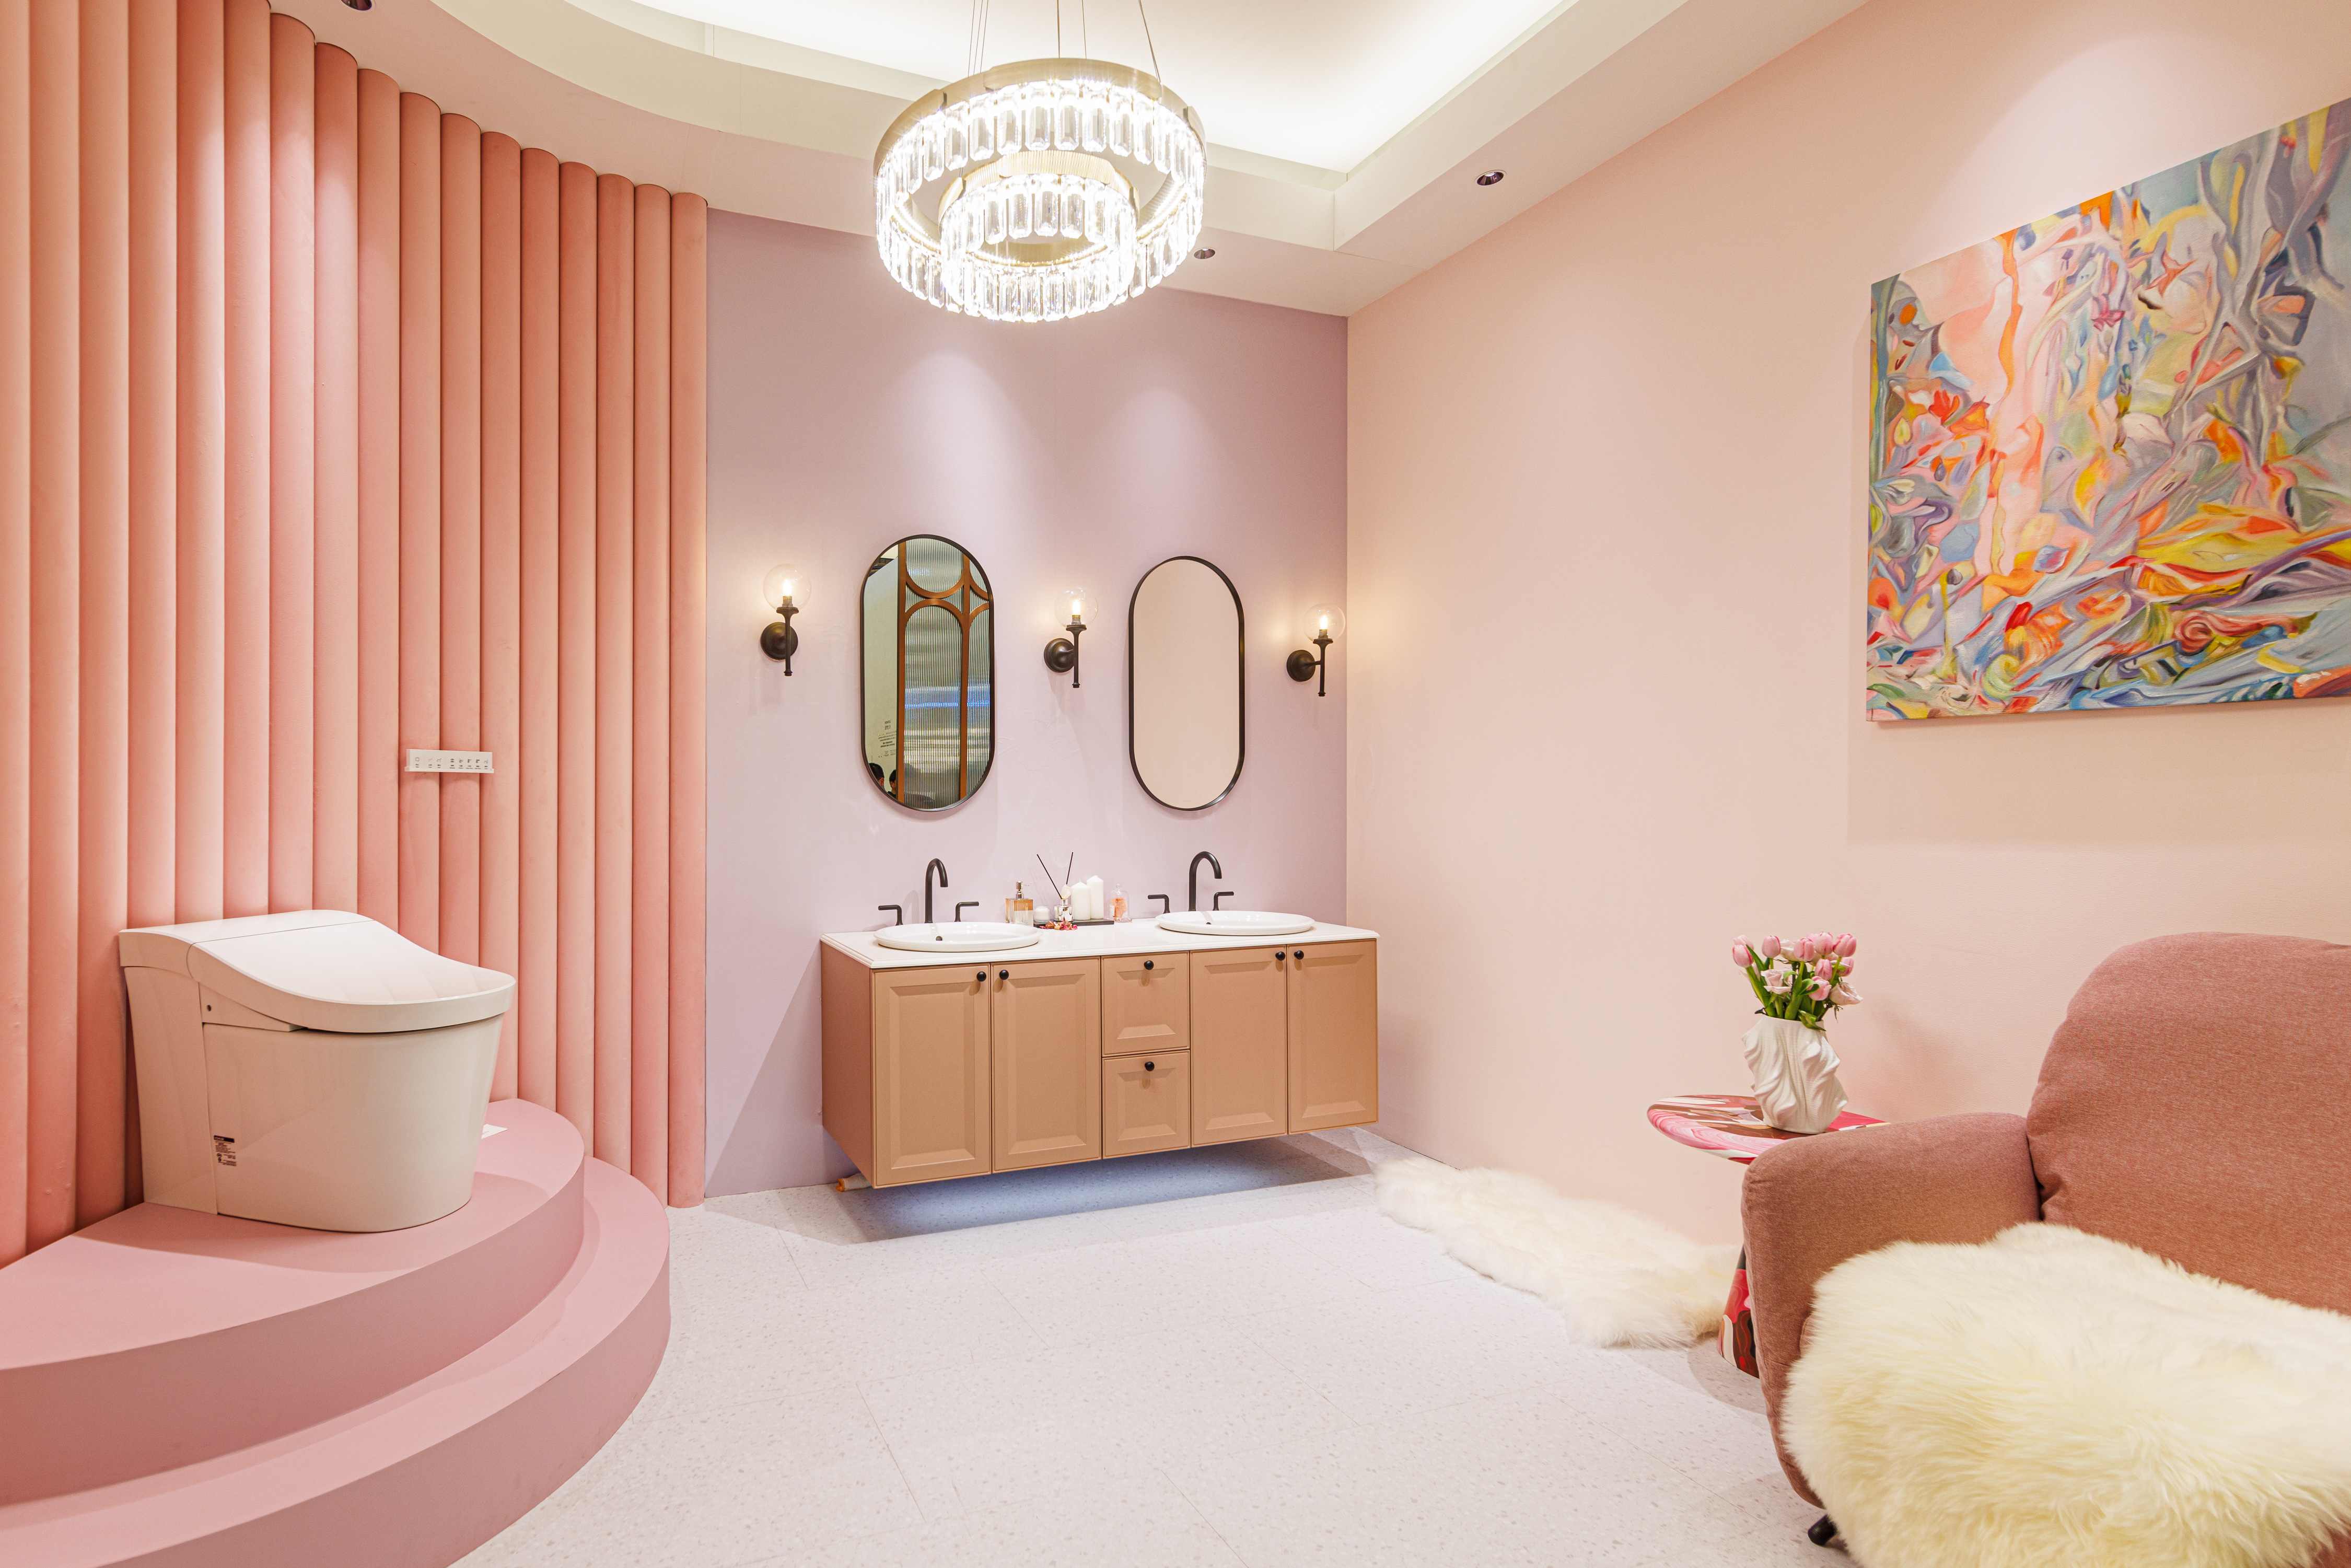 粉色的房间

中度可信度描述已自动生成